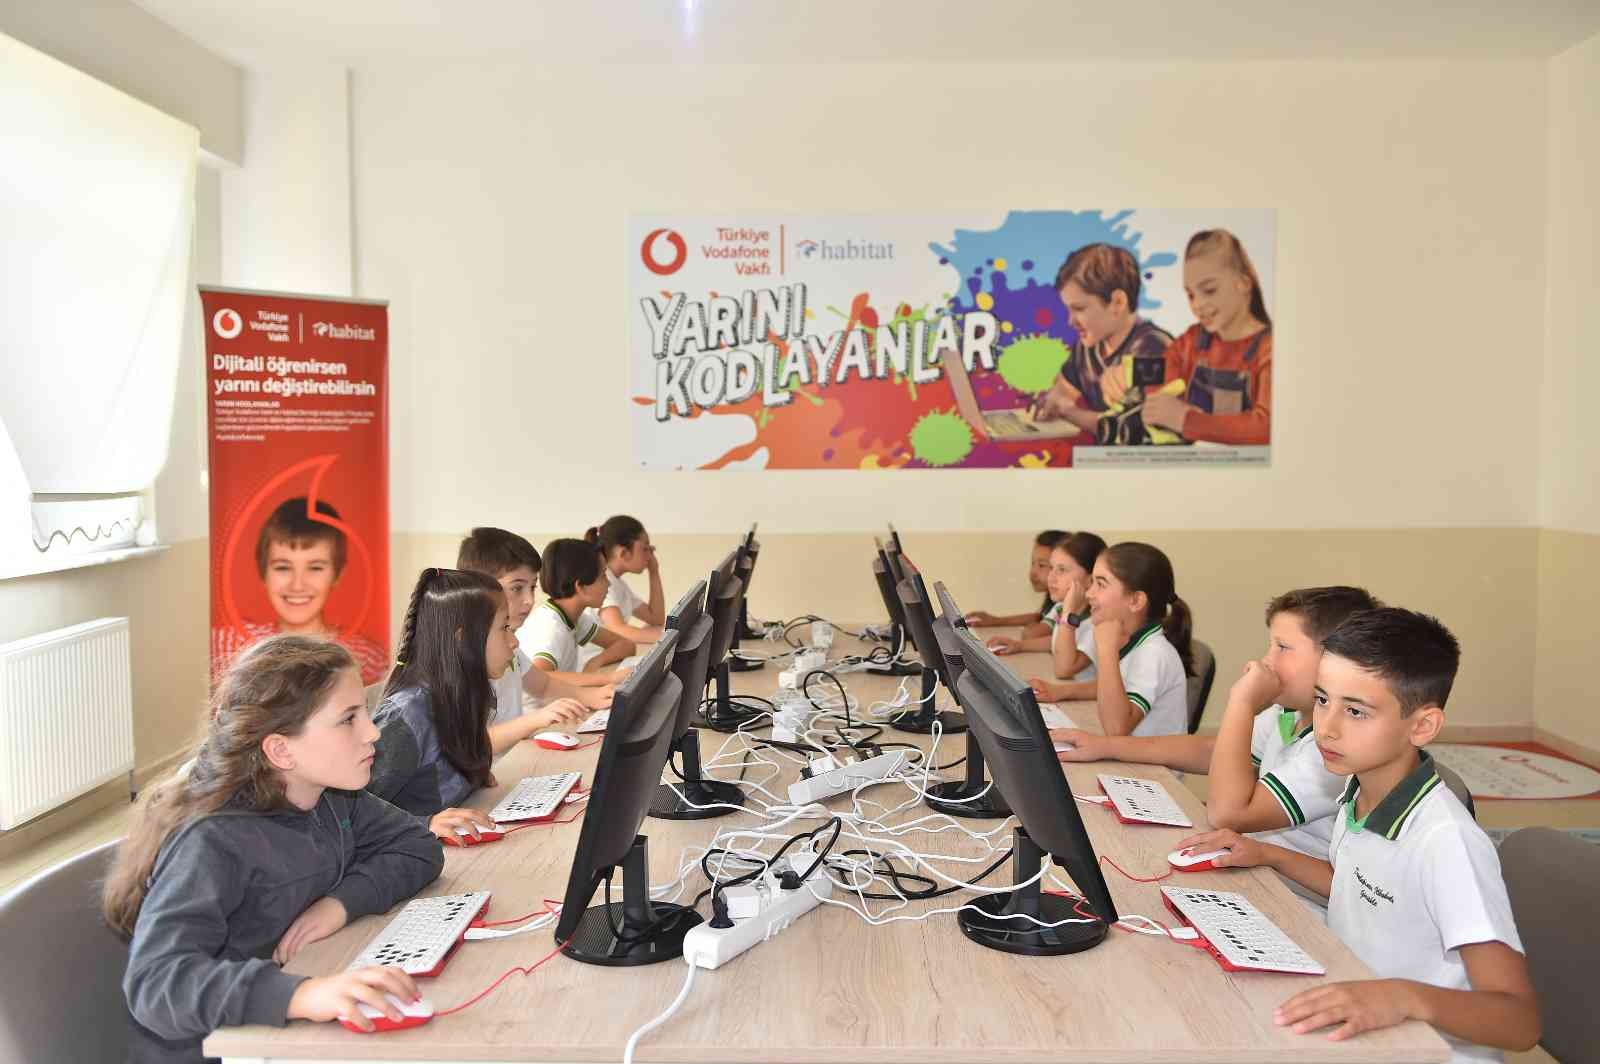 Vodafone, karbon ayakizini küçültme hedefiyle başlattığı “Bu Atıklar Kod Yazıyor” projesini Türkiye geneline yaygınlaştırmayı sürdürüyor. Şirket ...